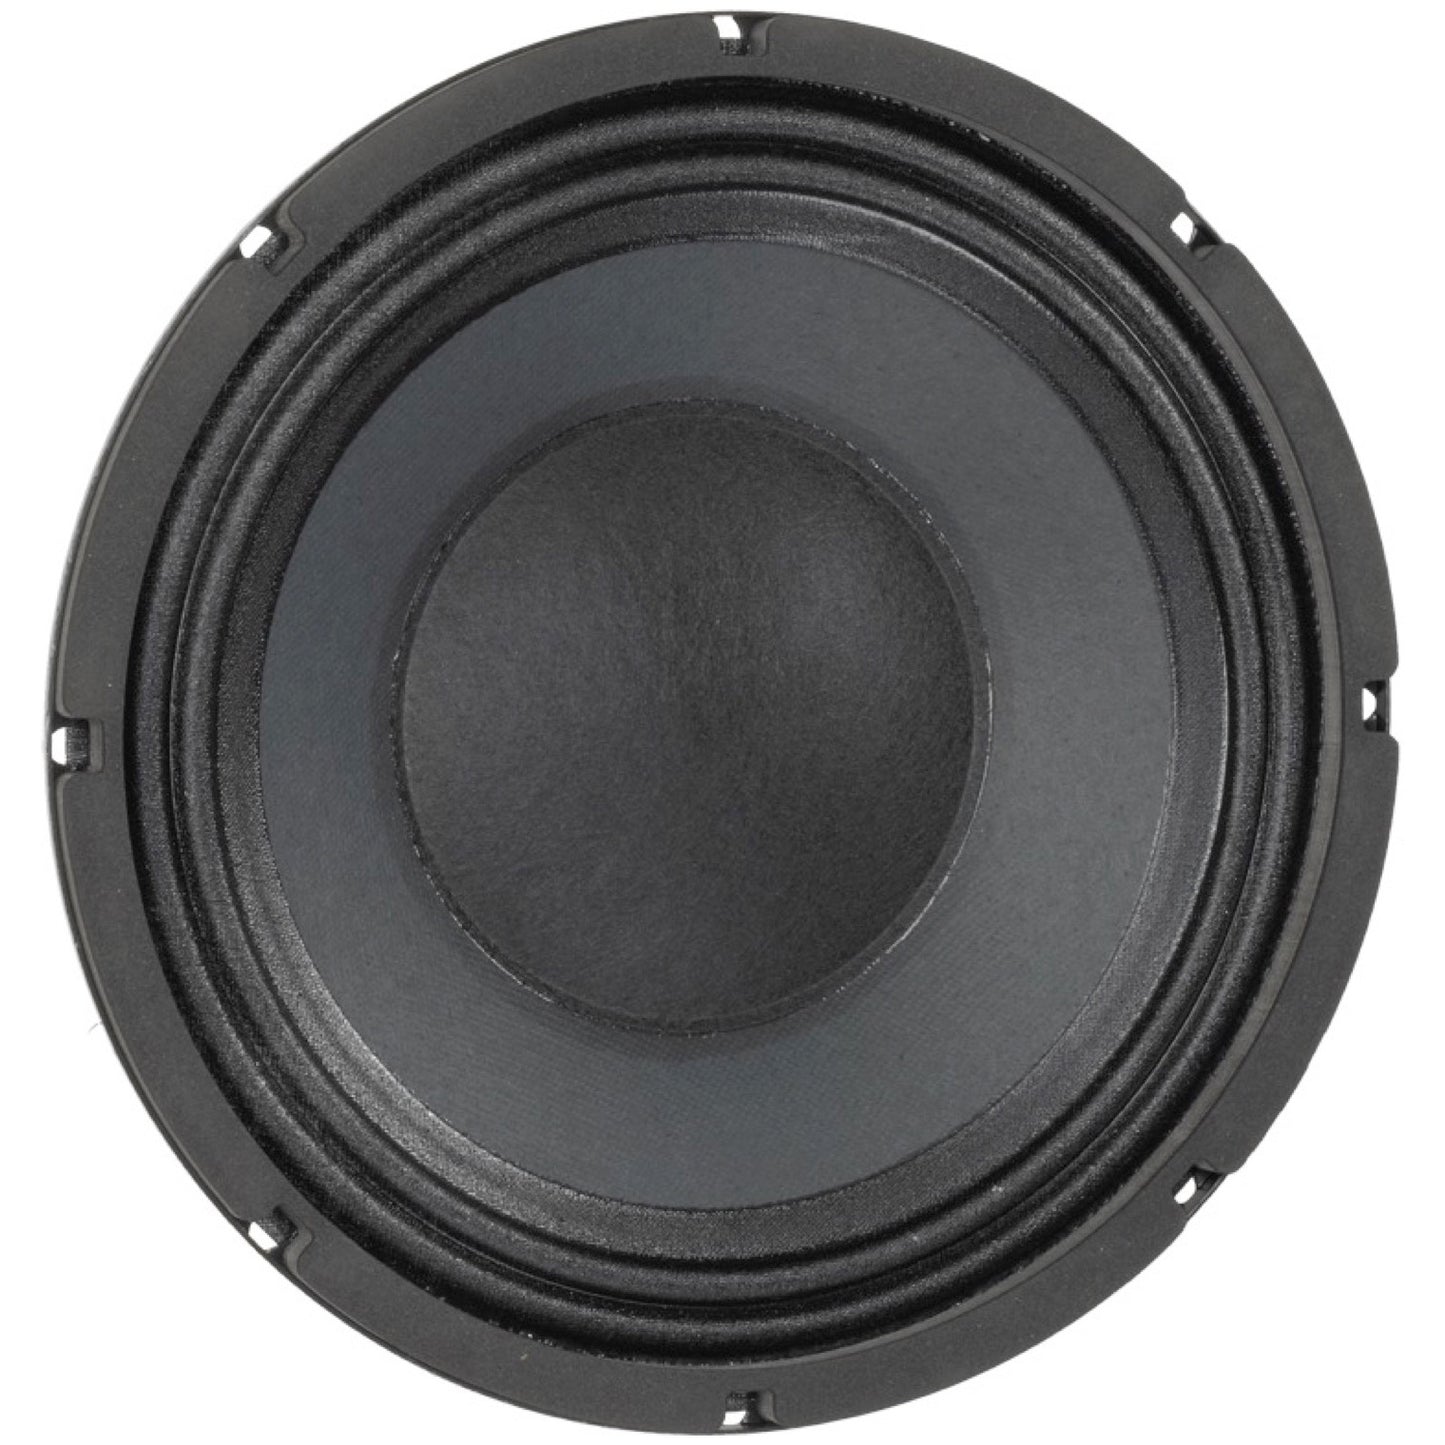 Eminence SC10 Bass Speaker (150 Watts), 16 Ohms, 10 Inch